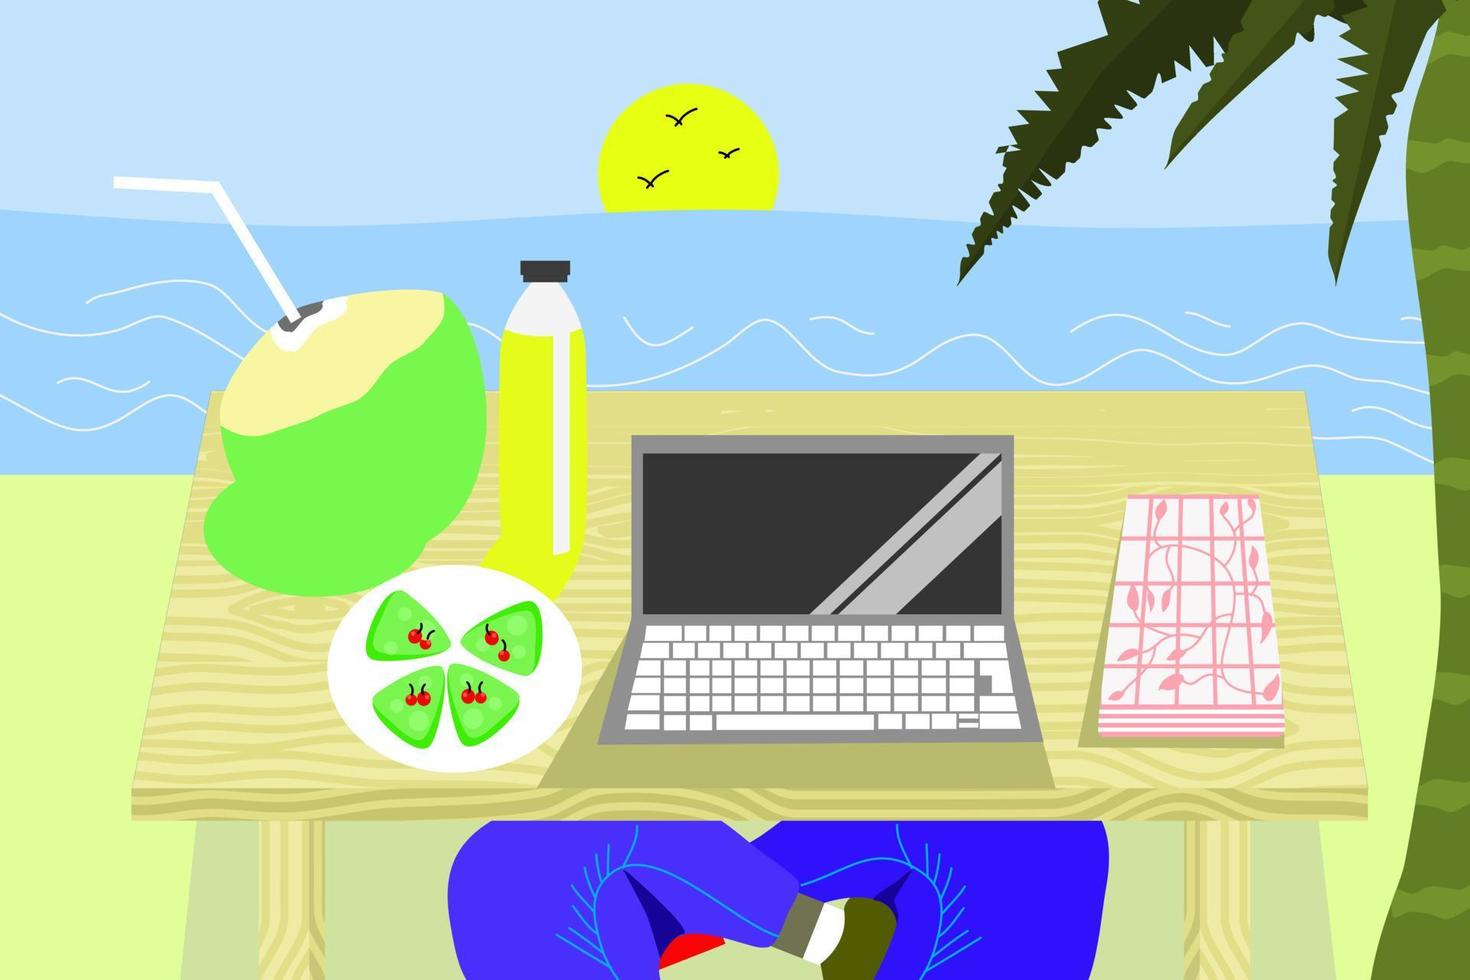 sommer bakcgorund, arbeiten während des urlaubs am strand im sommer, essen pfannkuchen und trinken kokosnuss vektor